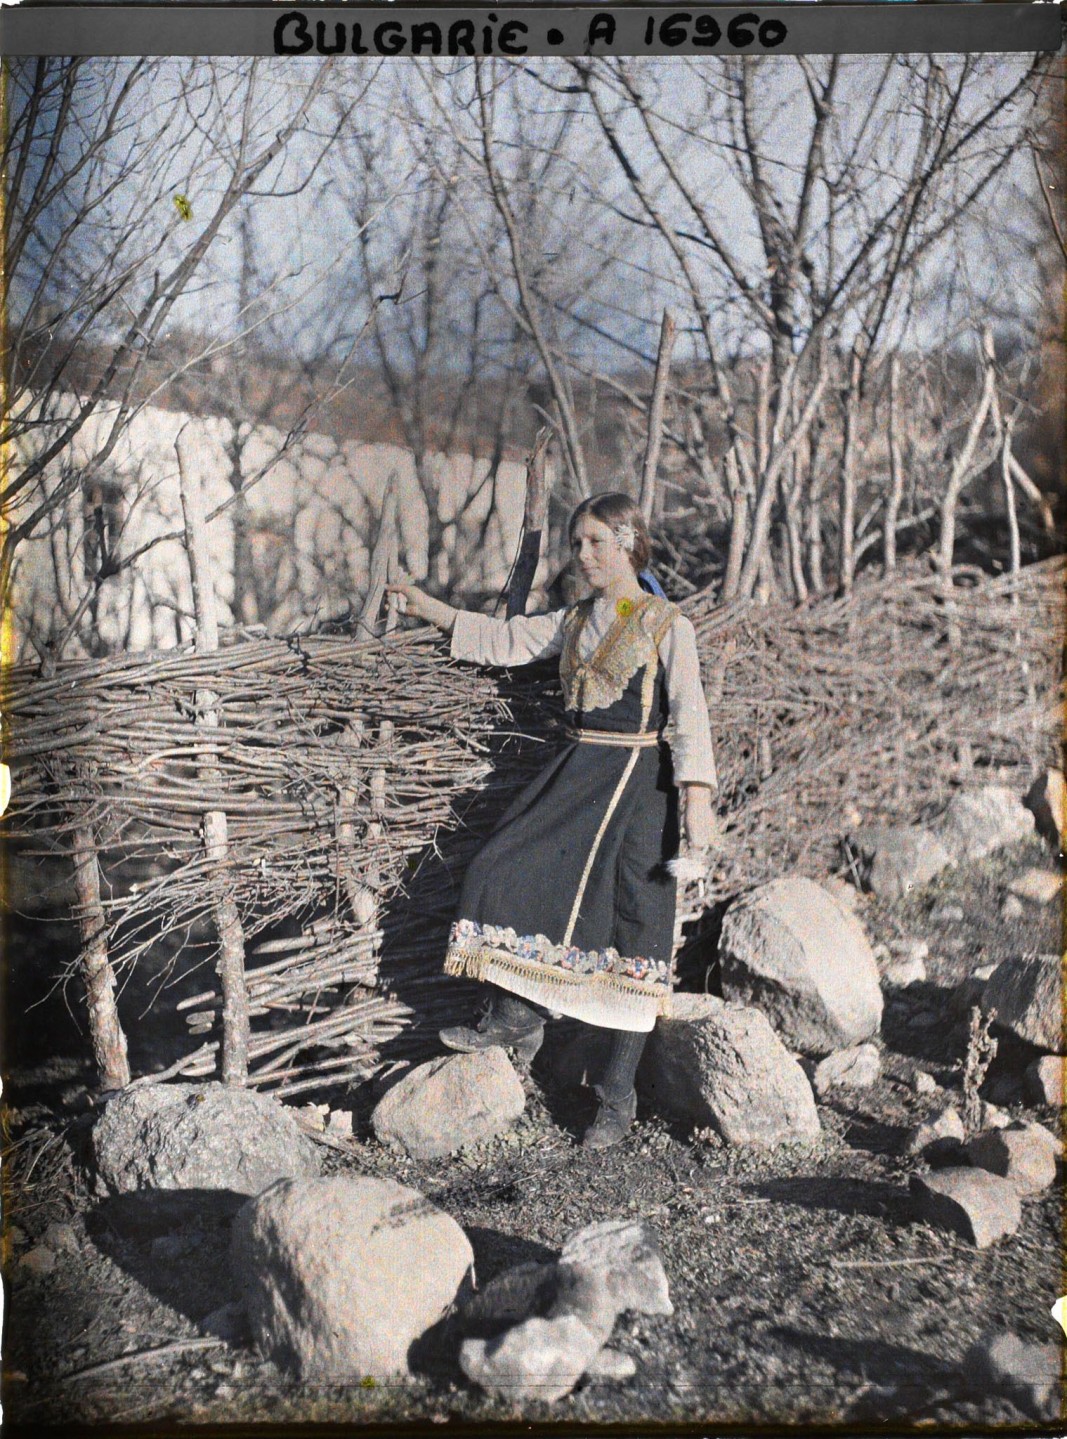 Село Владая в покрайнините на София, България, Младо момиче в бродирана носия пред плет, на заден план се вижда църква